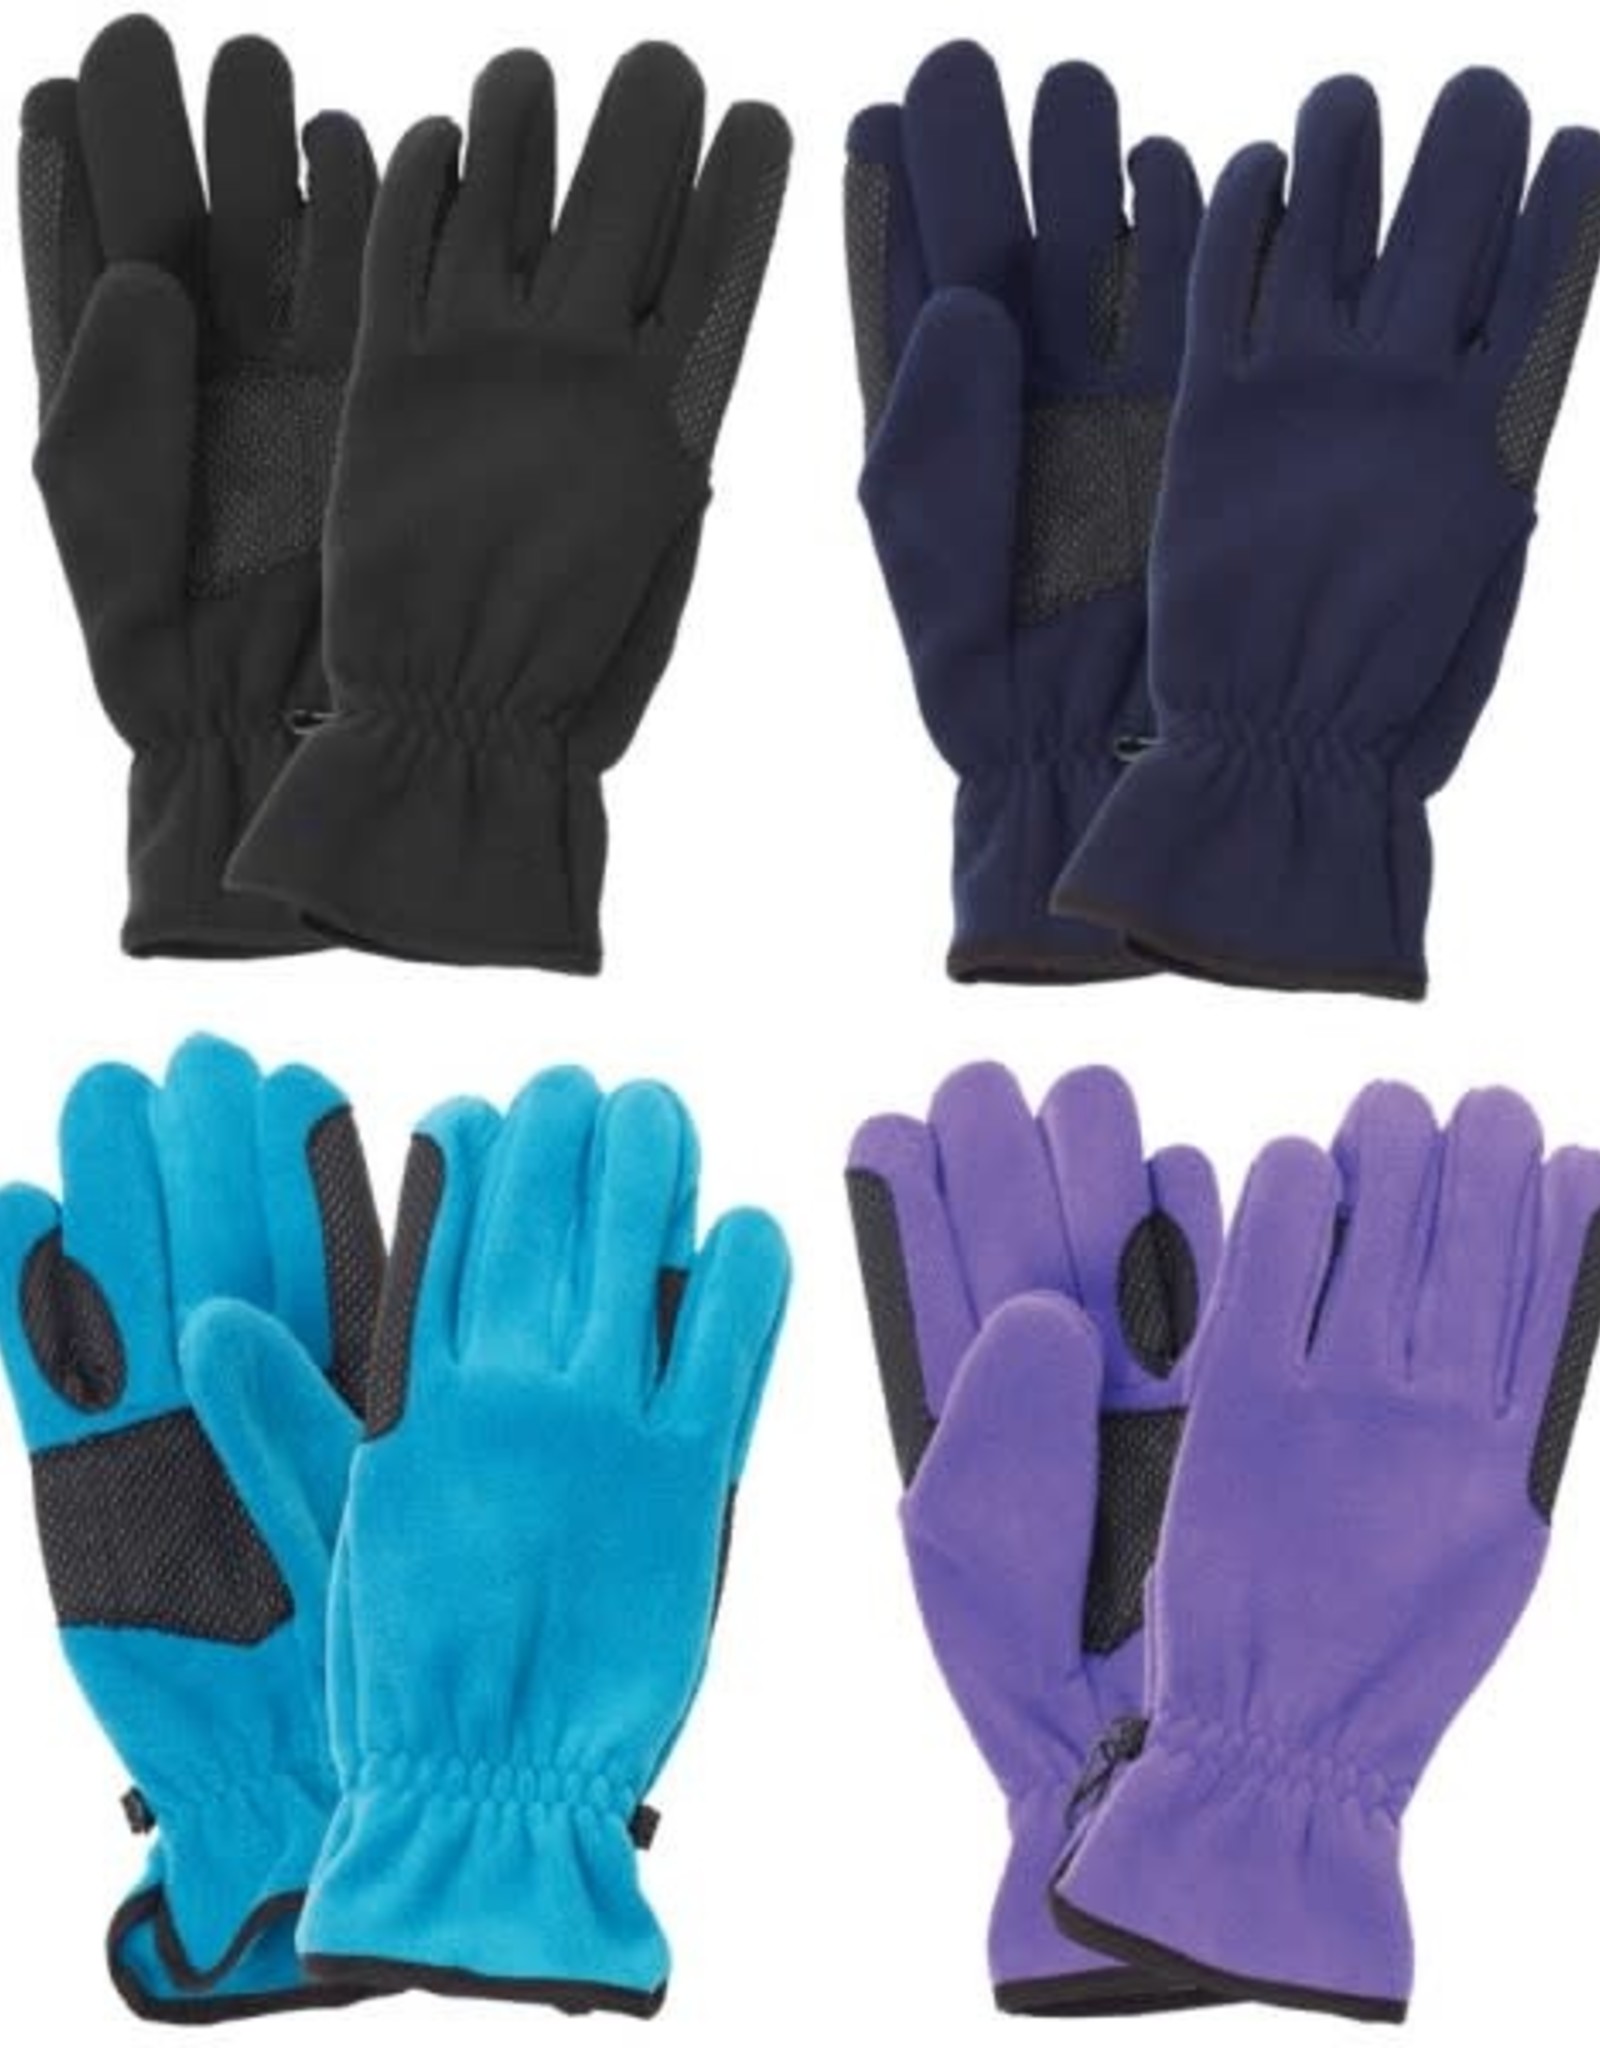 Equistar Ladies' Fleece Gloves